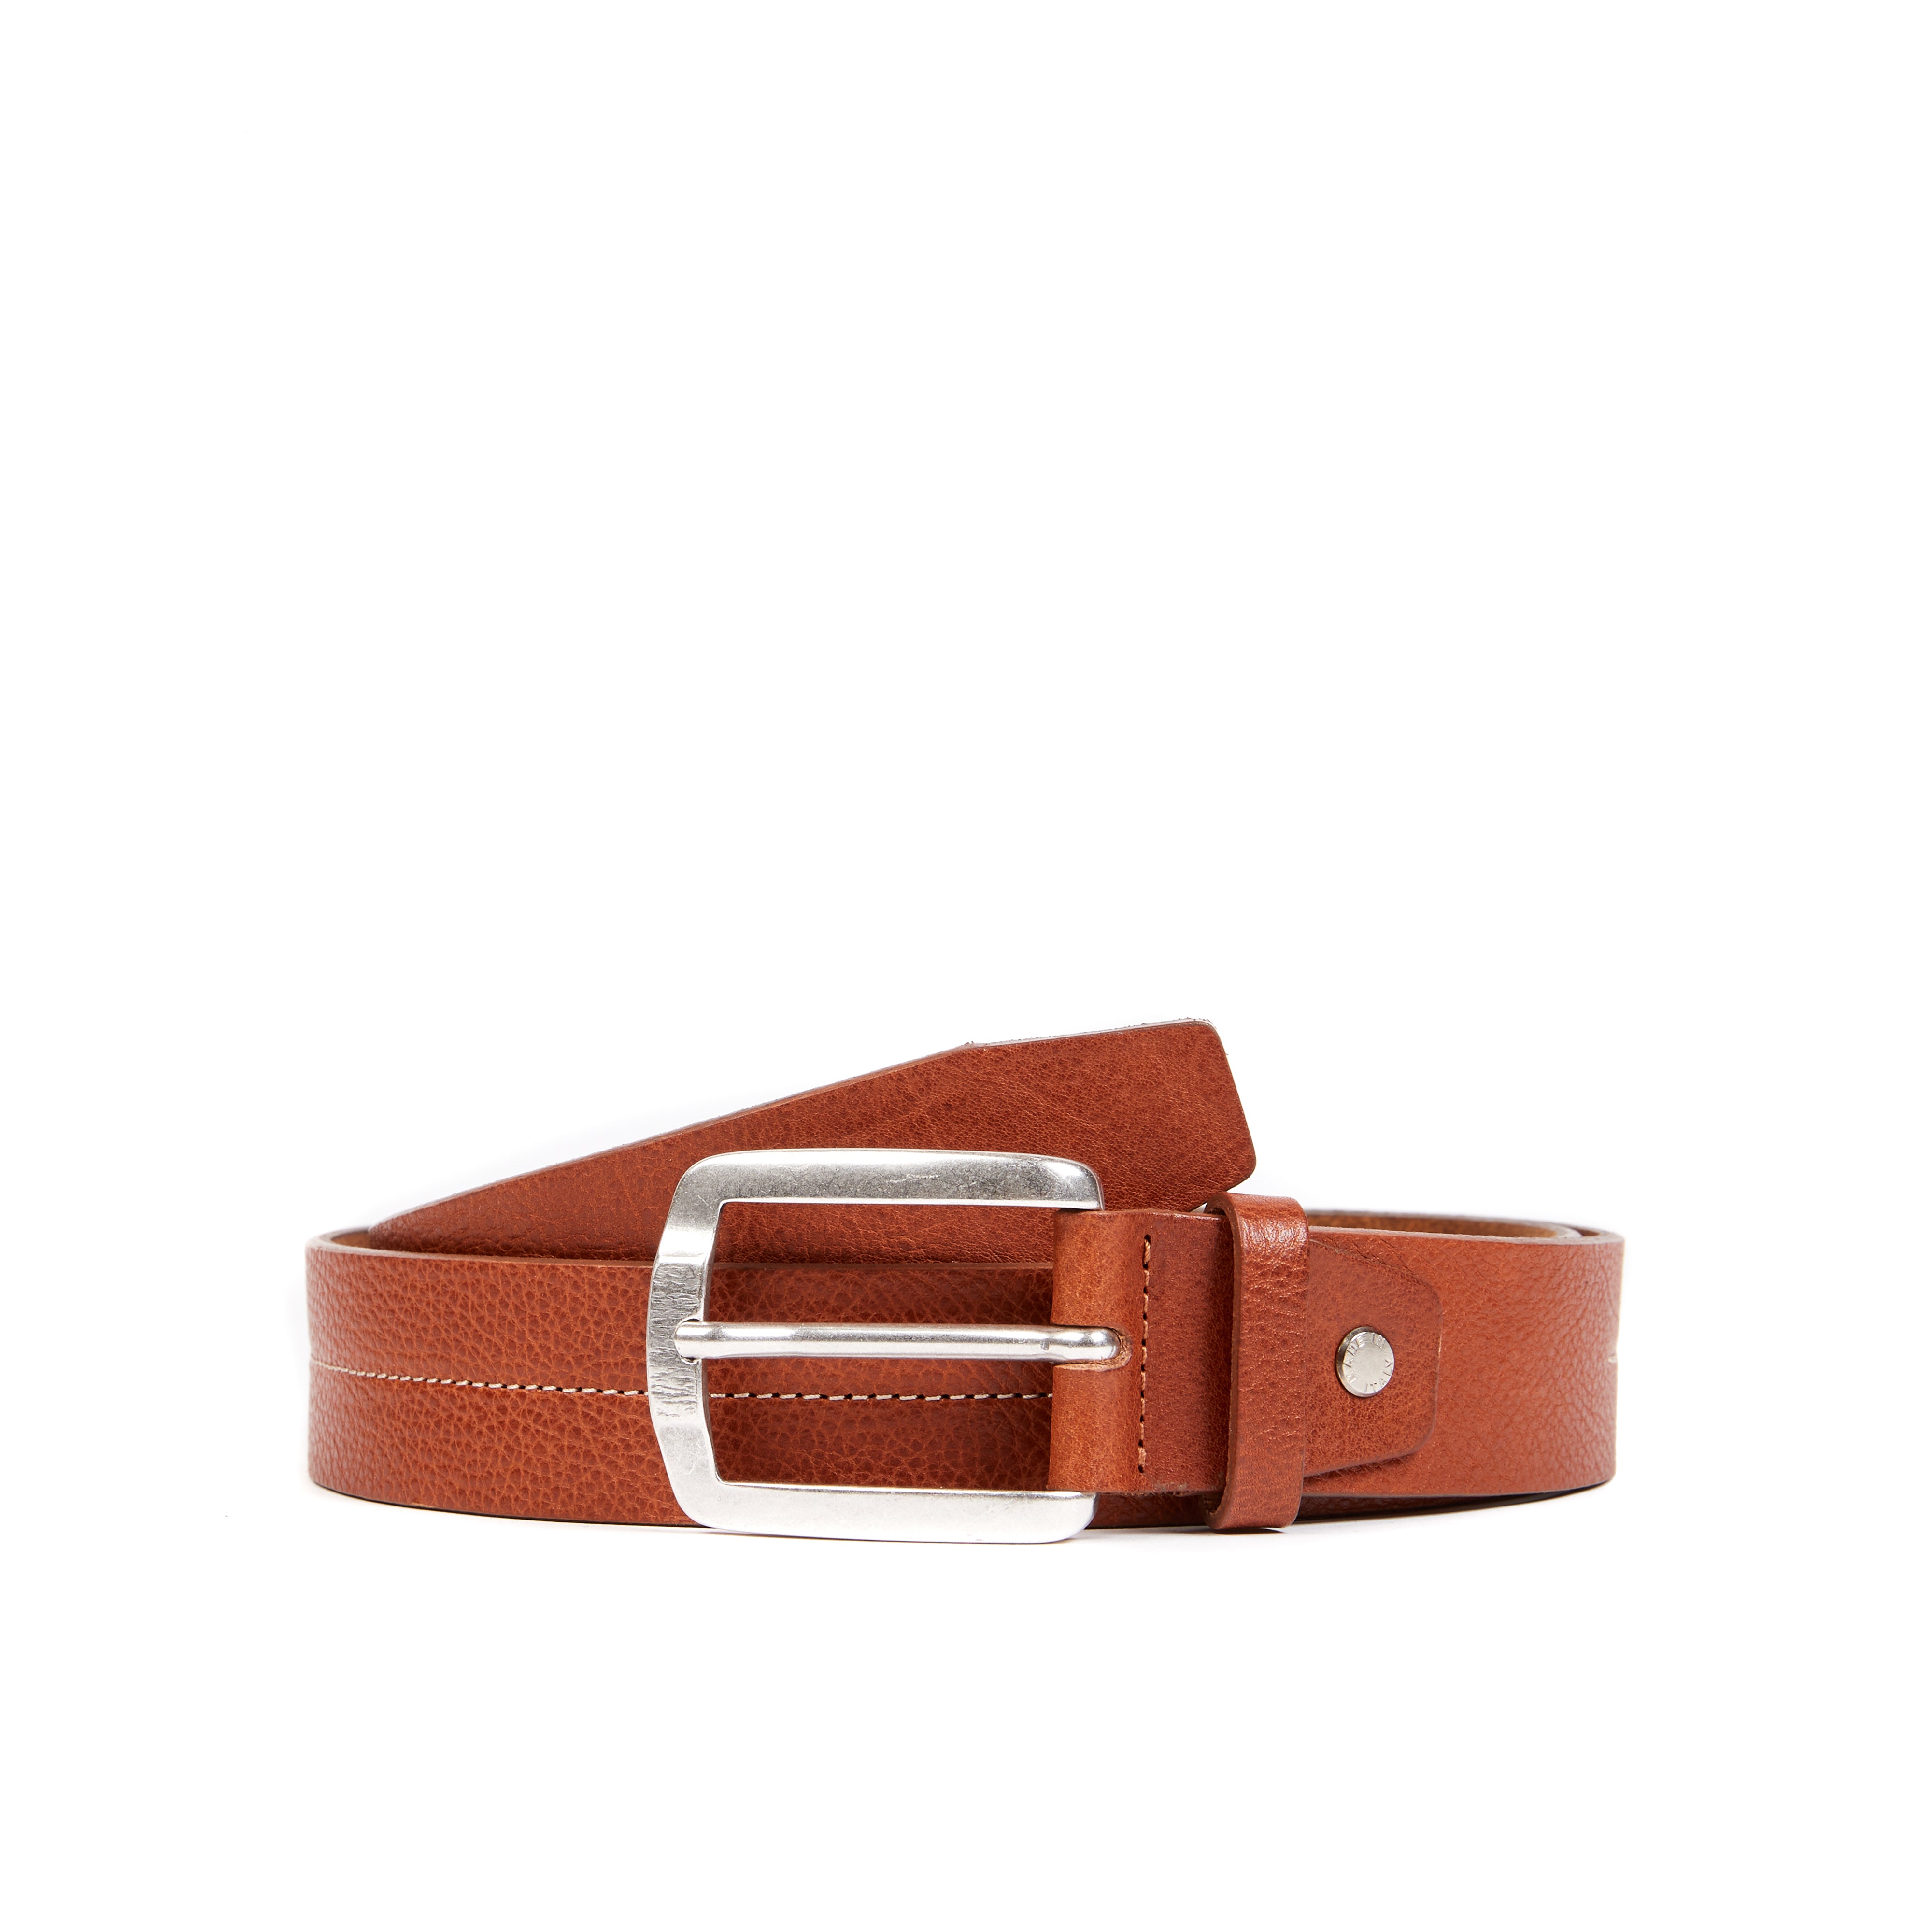 Embossed brown belt